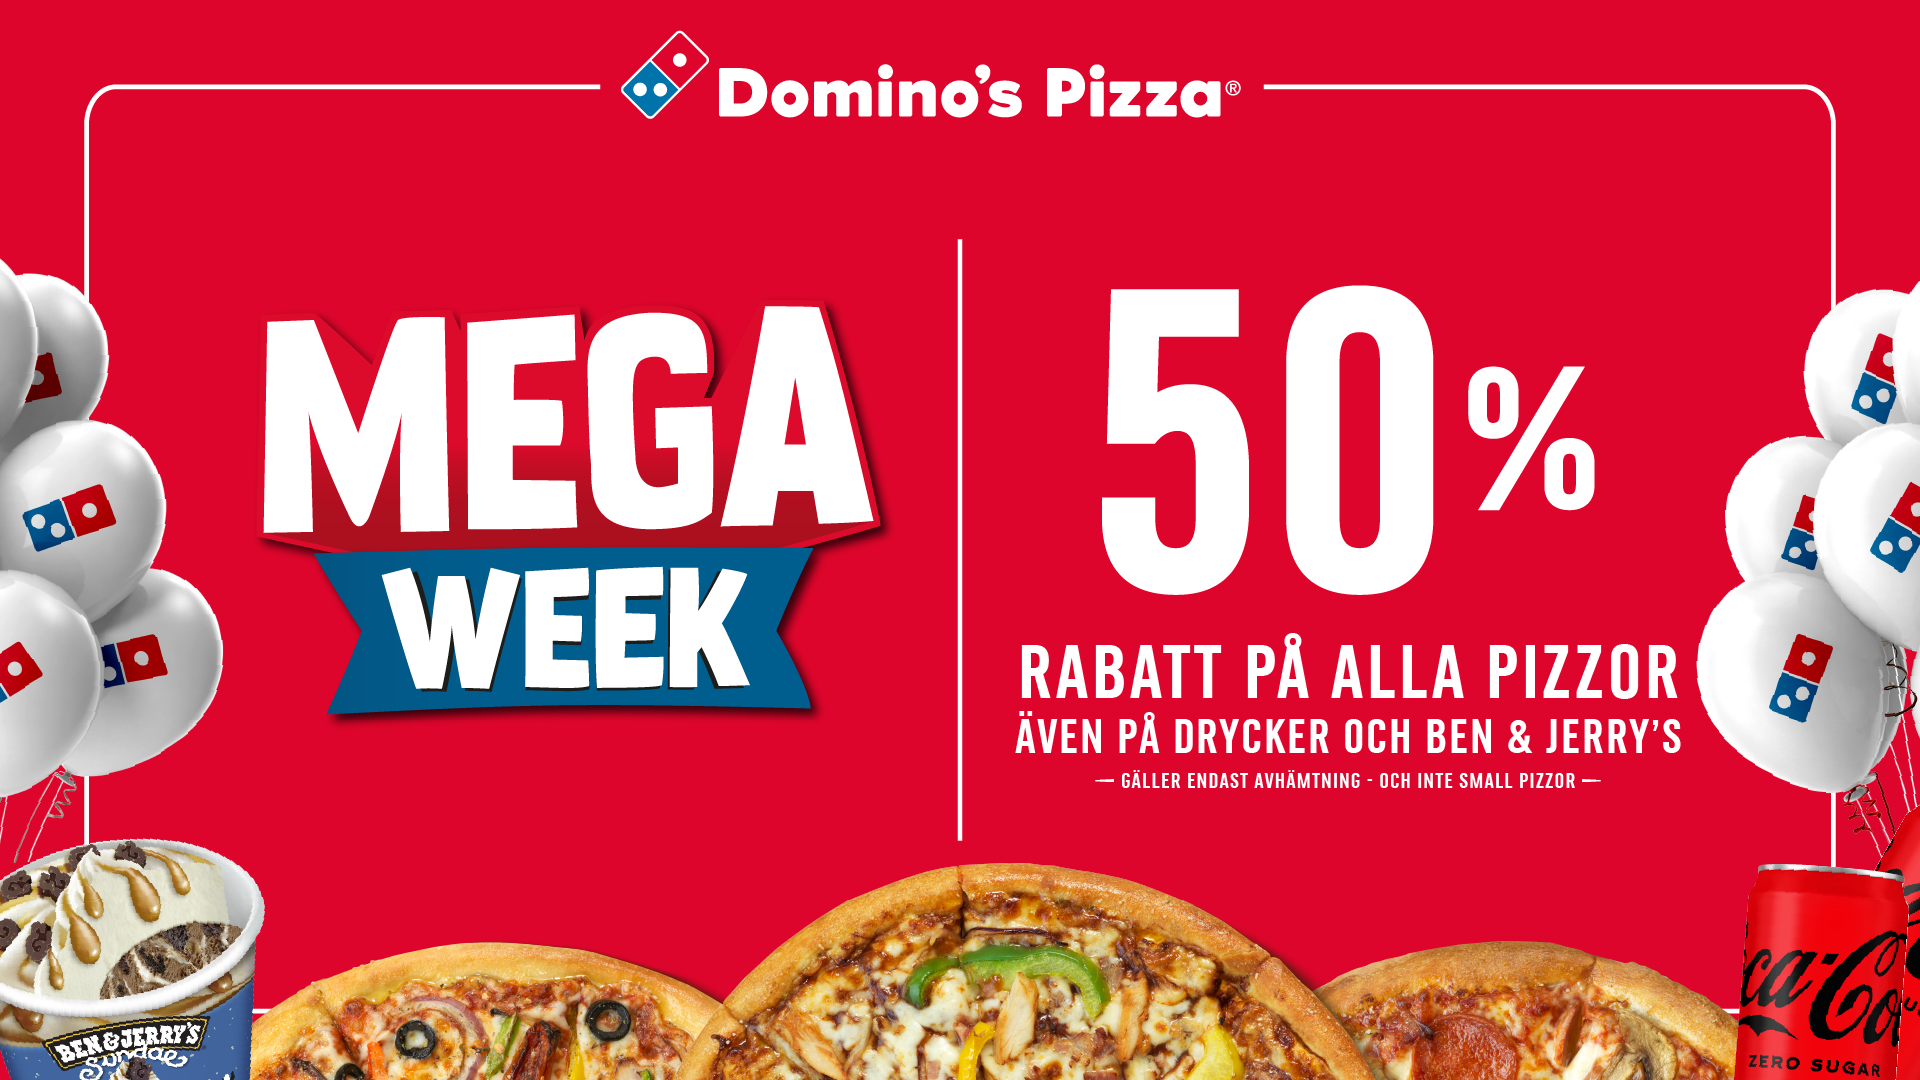 Mega Week - 50% Rabatt på Alla Pizzor